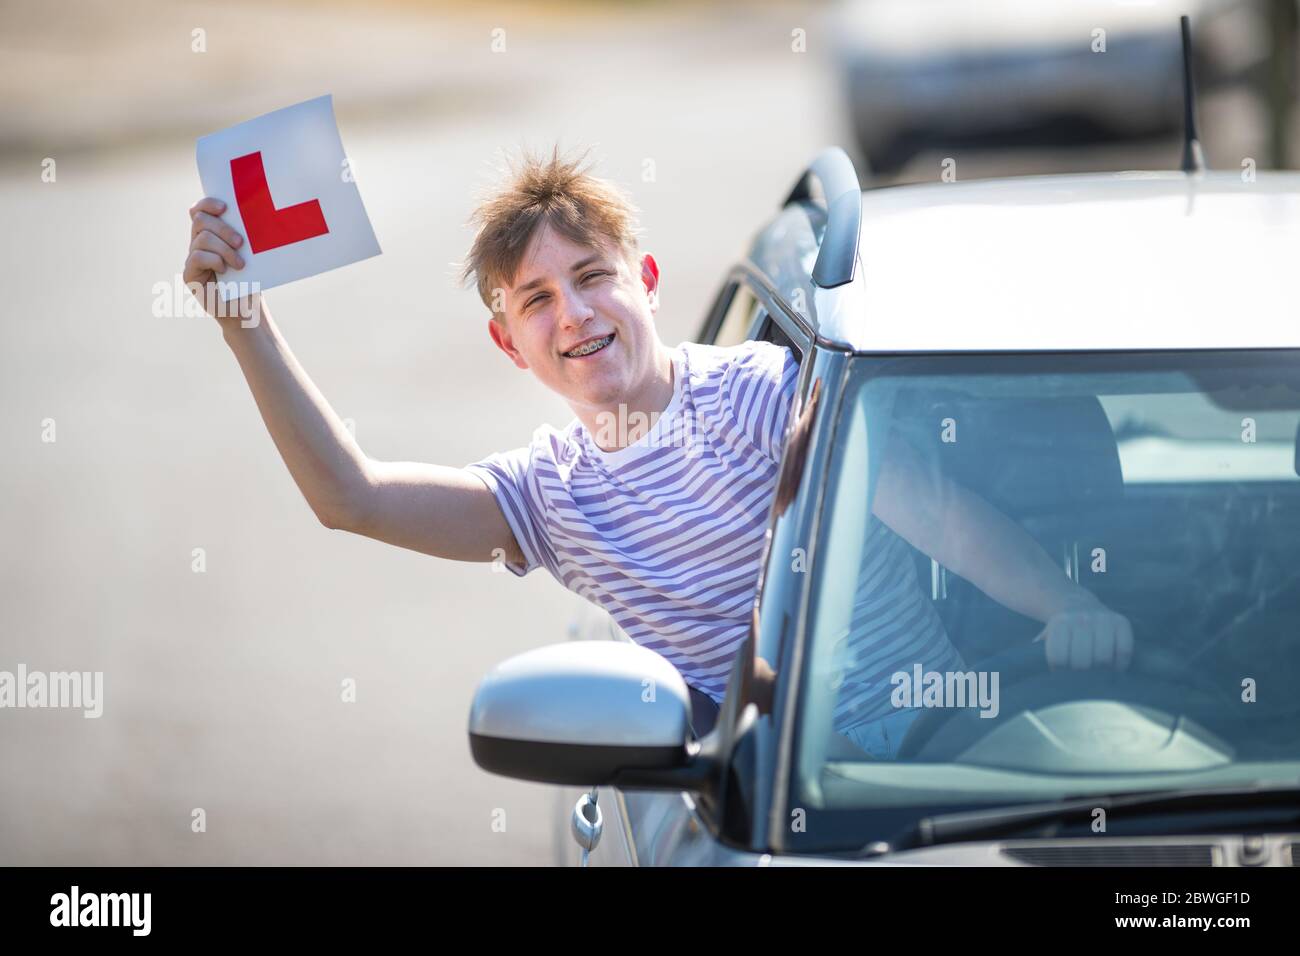 Un jeune conducteur apprenant qui célèbre son passage à l'essai routier en agitant ses plaques en L dans l'air. Banque D'Images